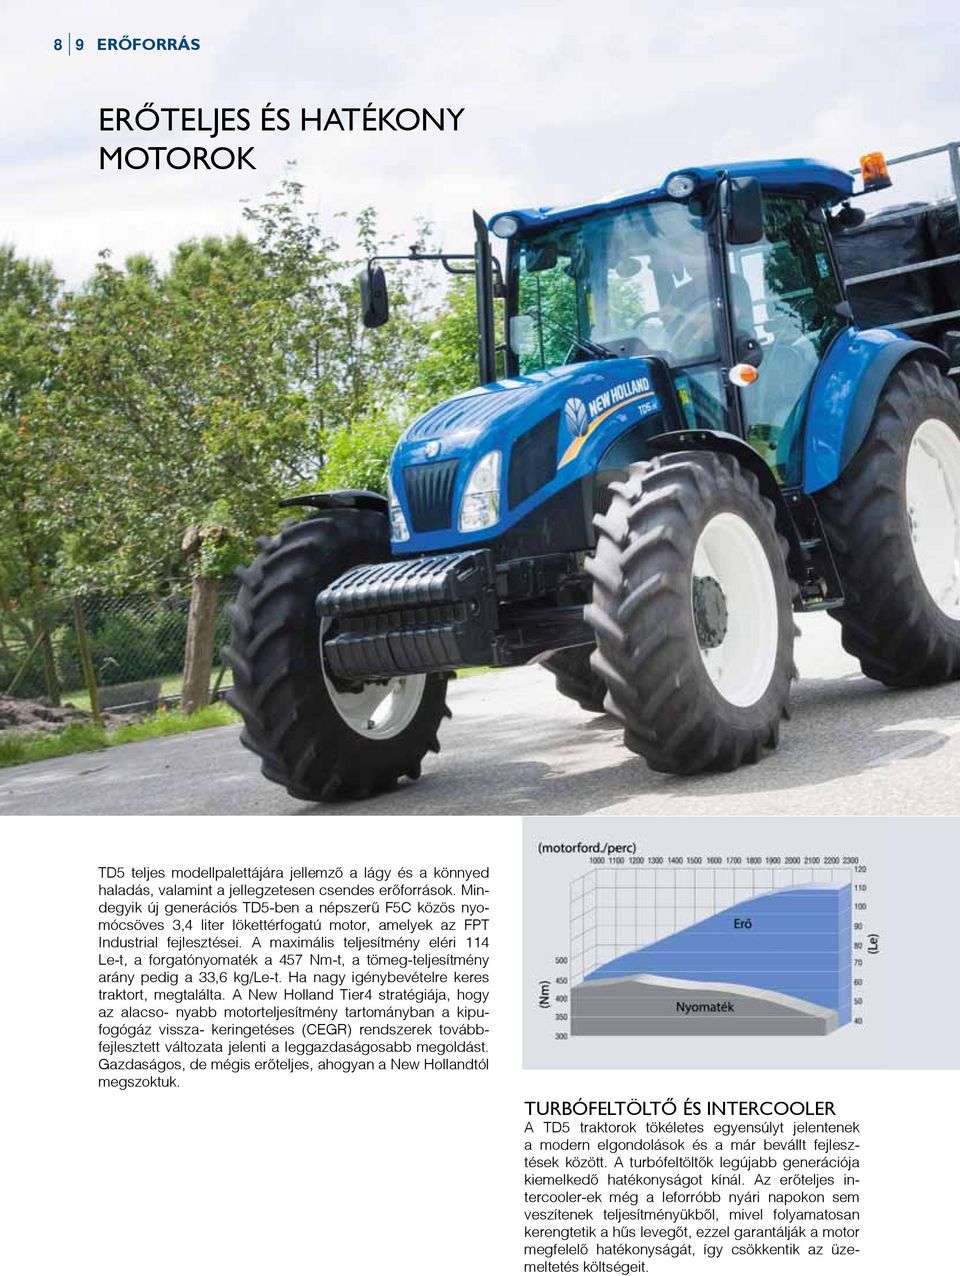 A maximális teljesítmény eléri 114 Le-t, a forgatónyomaték a 457 Nm-t, a tömeg-teljesítmény arány pedig a 33,6 kg/le-t. Ha nagy igénybevételre keres traktort, megtalálta.